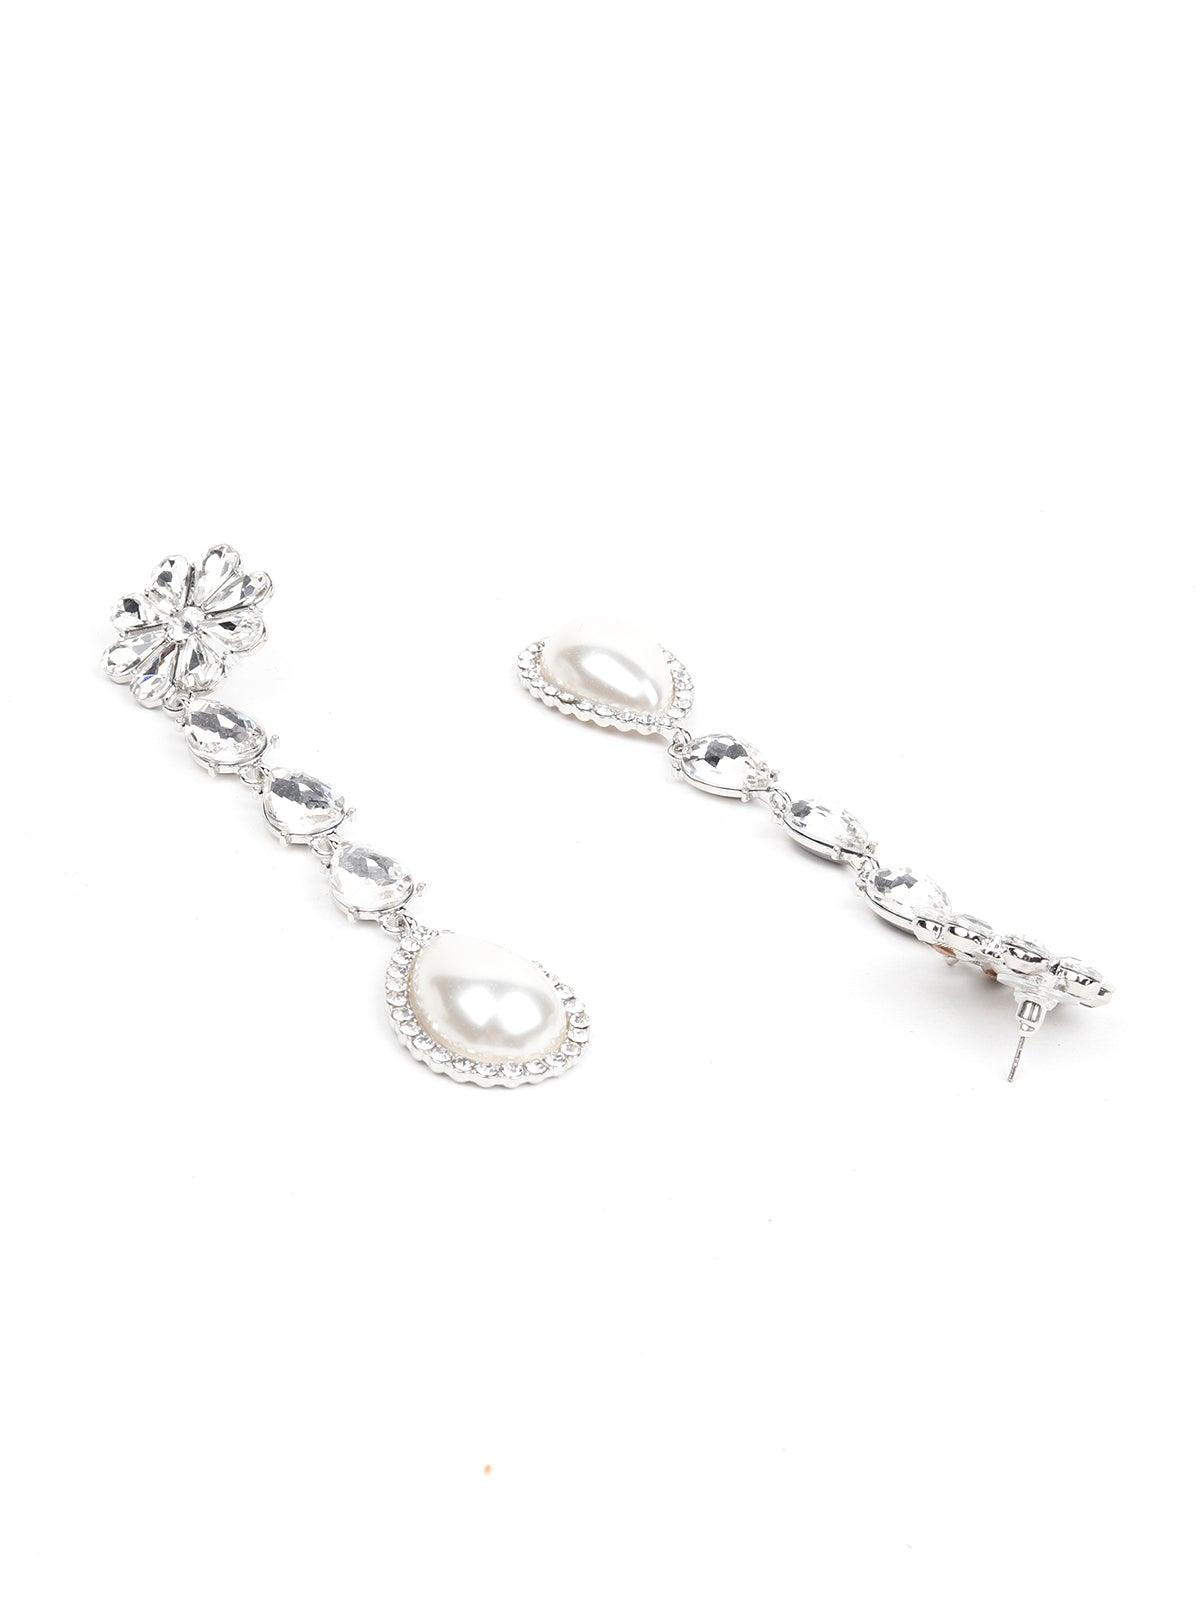 Elegant Crystal And Pearl Drop Earrings - Odette